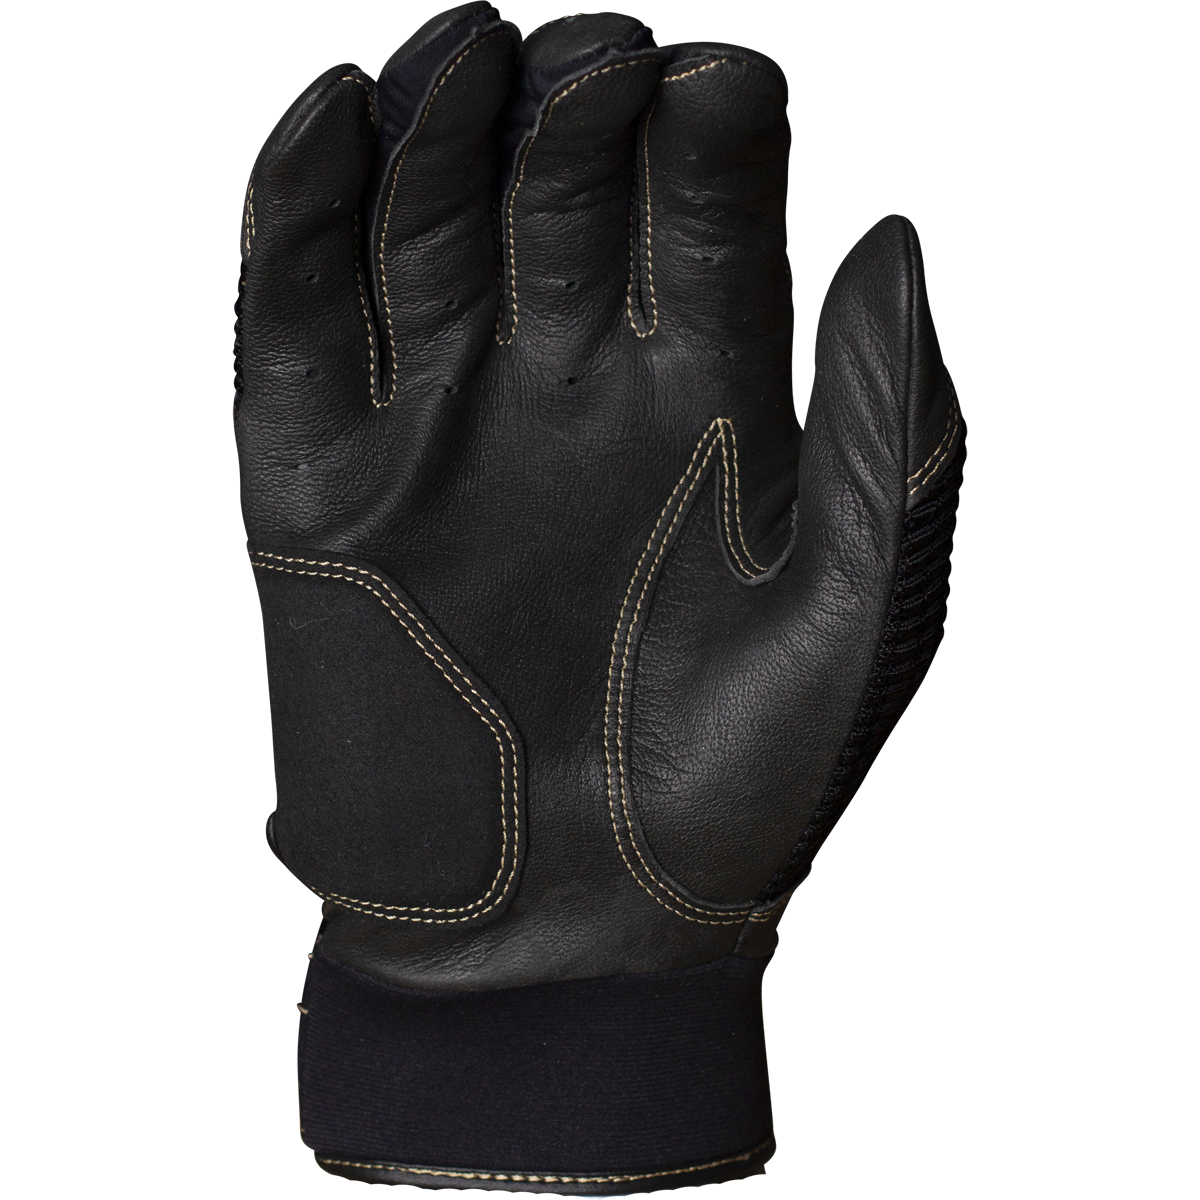 Miken Adult Batting Gloves: MBGGLD